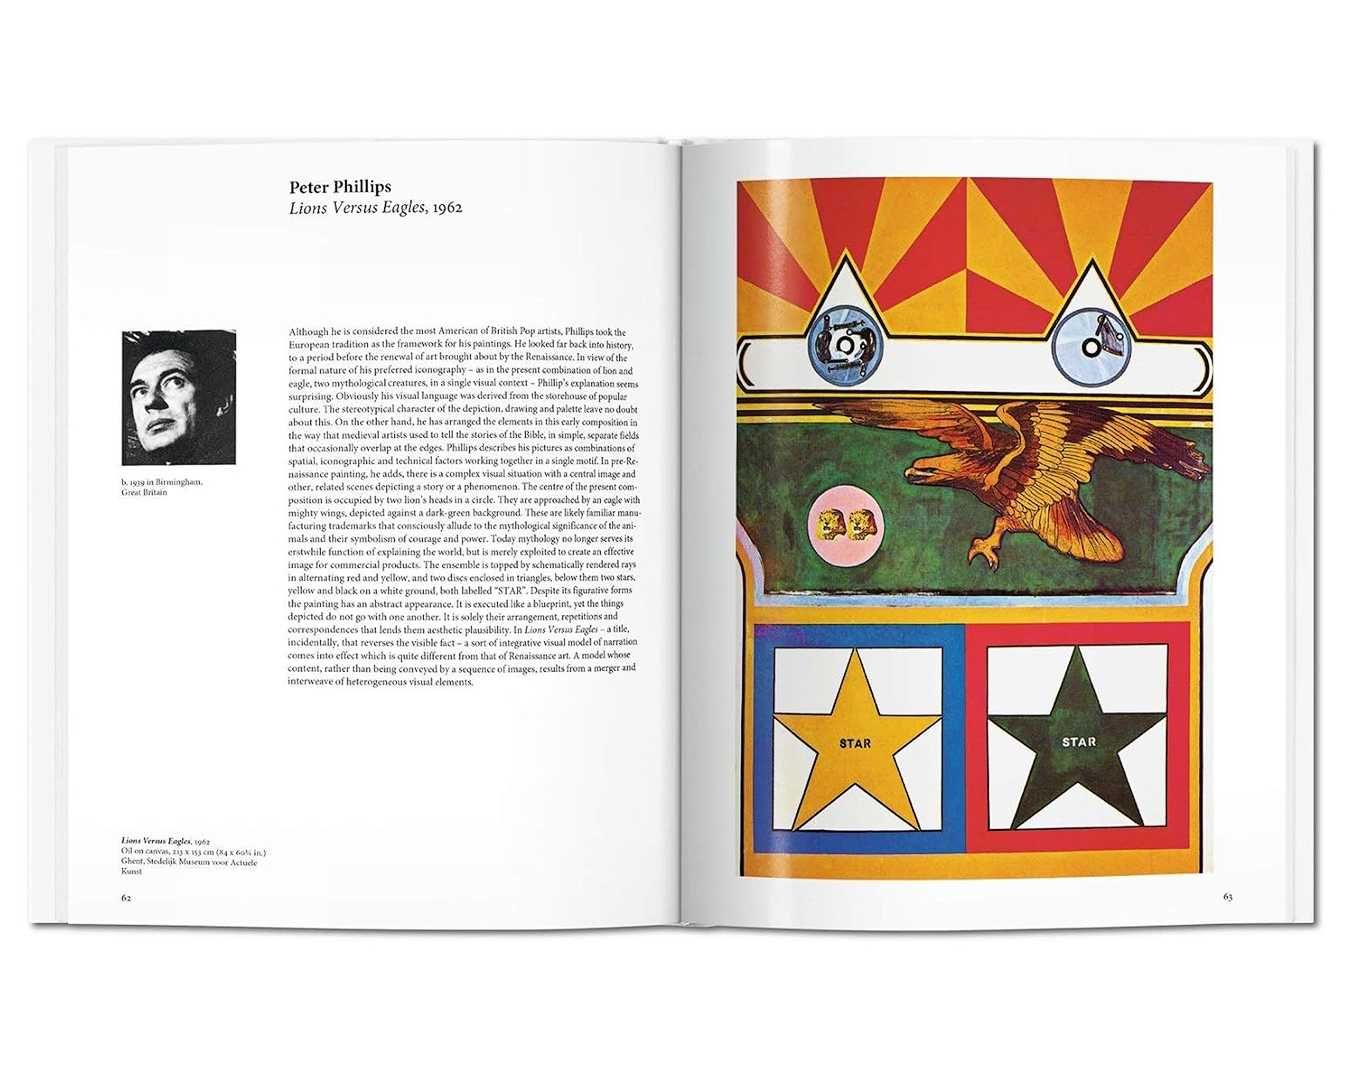 Книги о великих художниках Поп-арт. Pop Art - Taschen